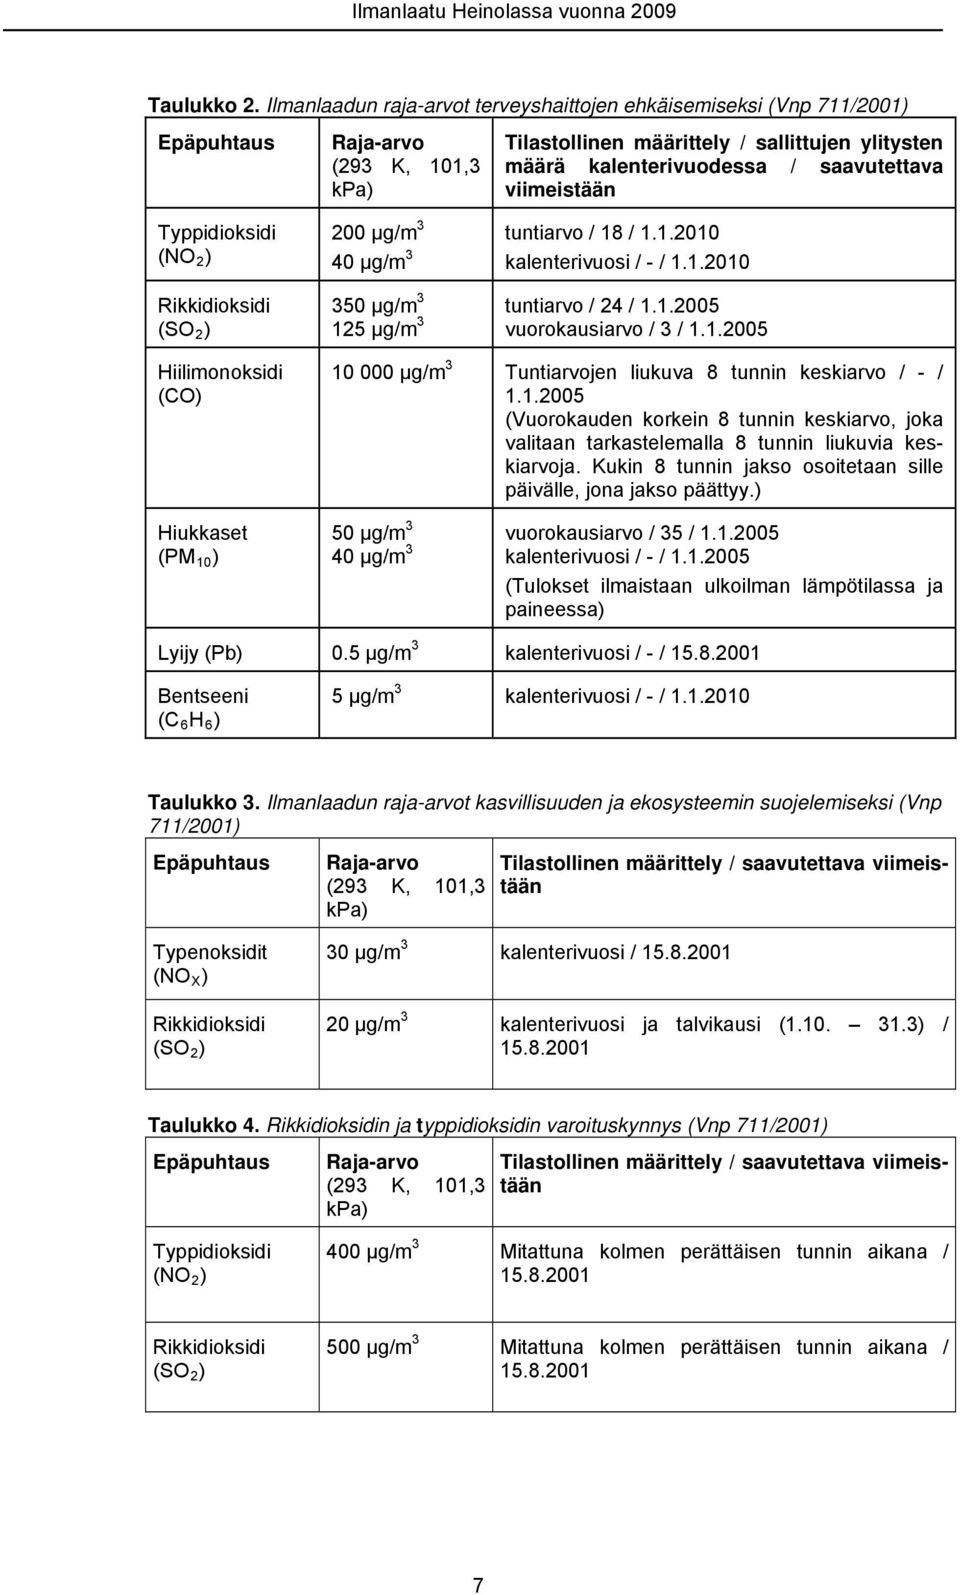 viimeistään Typpidioksidi (NO 2 ) Rikkidioksidi (SO 2 ) Hiilimonoksidi (CO) Hiukkaset (PM 1 ) 2 μg/m 3 4 μg/m 3 tuntiarvo / 18 / 1.1.21 kalenterivuosi / - / 1.1.21 35 μg/m 3 125 μg/m 3 tuntiarvo / 24 / 1.